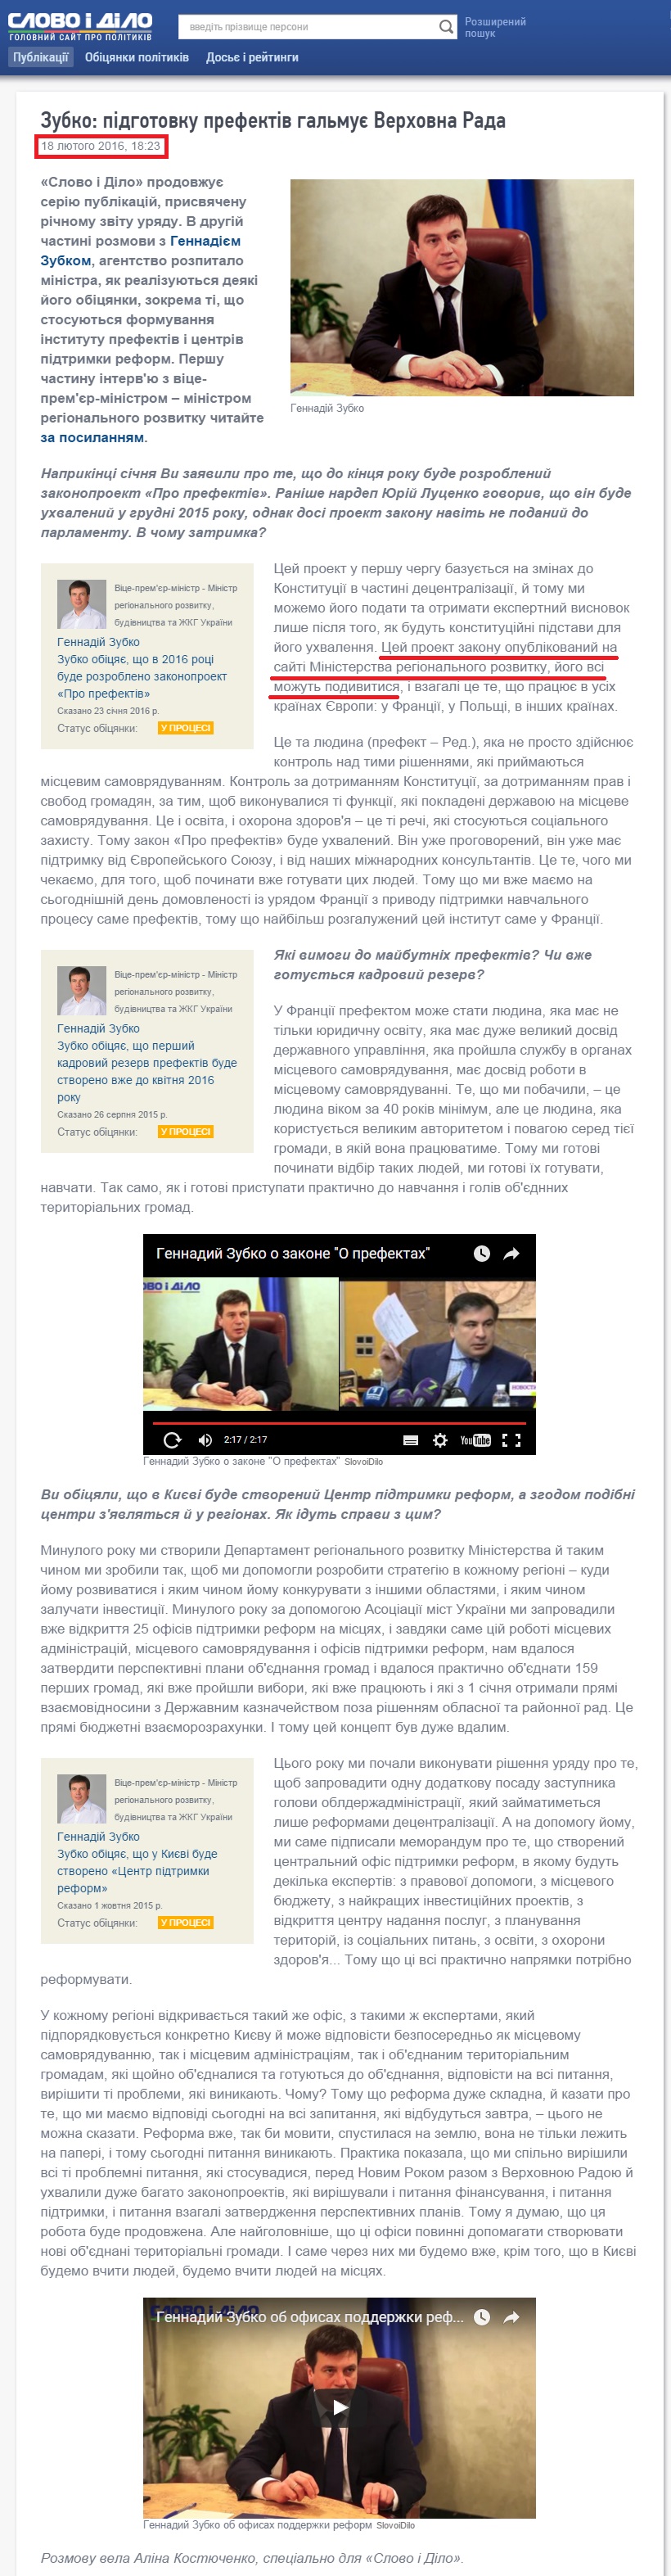 http://www.slovoidilo.ua/2016/02/18/intervju/zubko-pidhotovku-prefektiv-halmuye-verxovna-rada.-intervyu